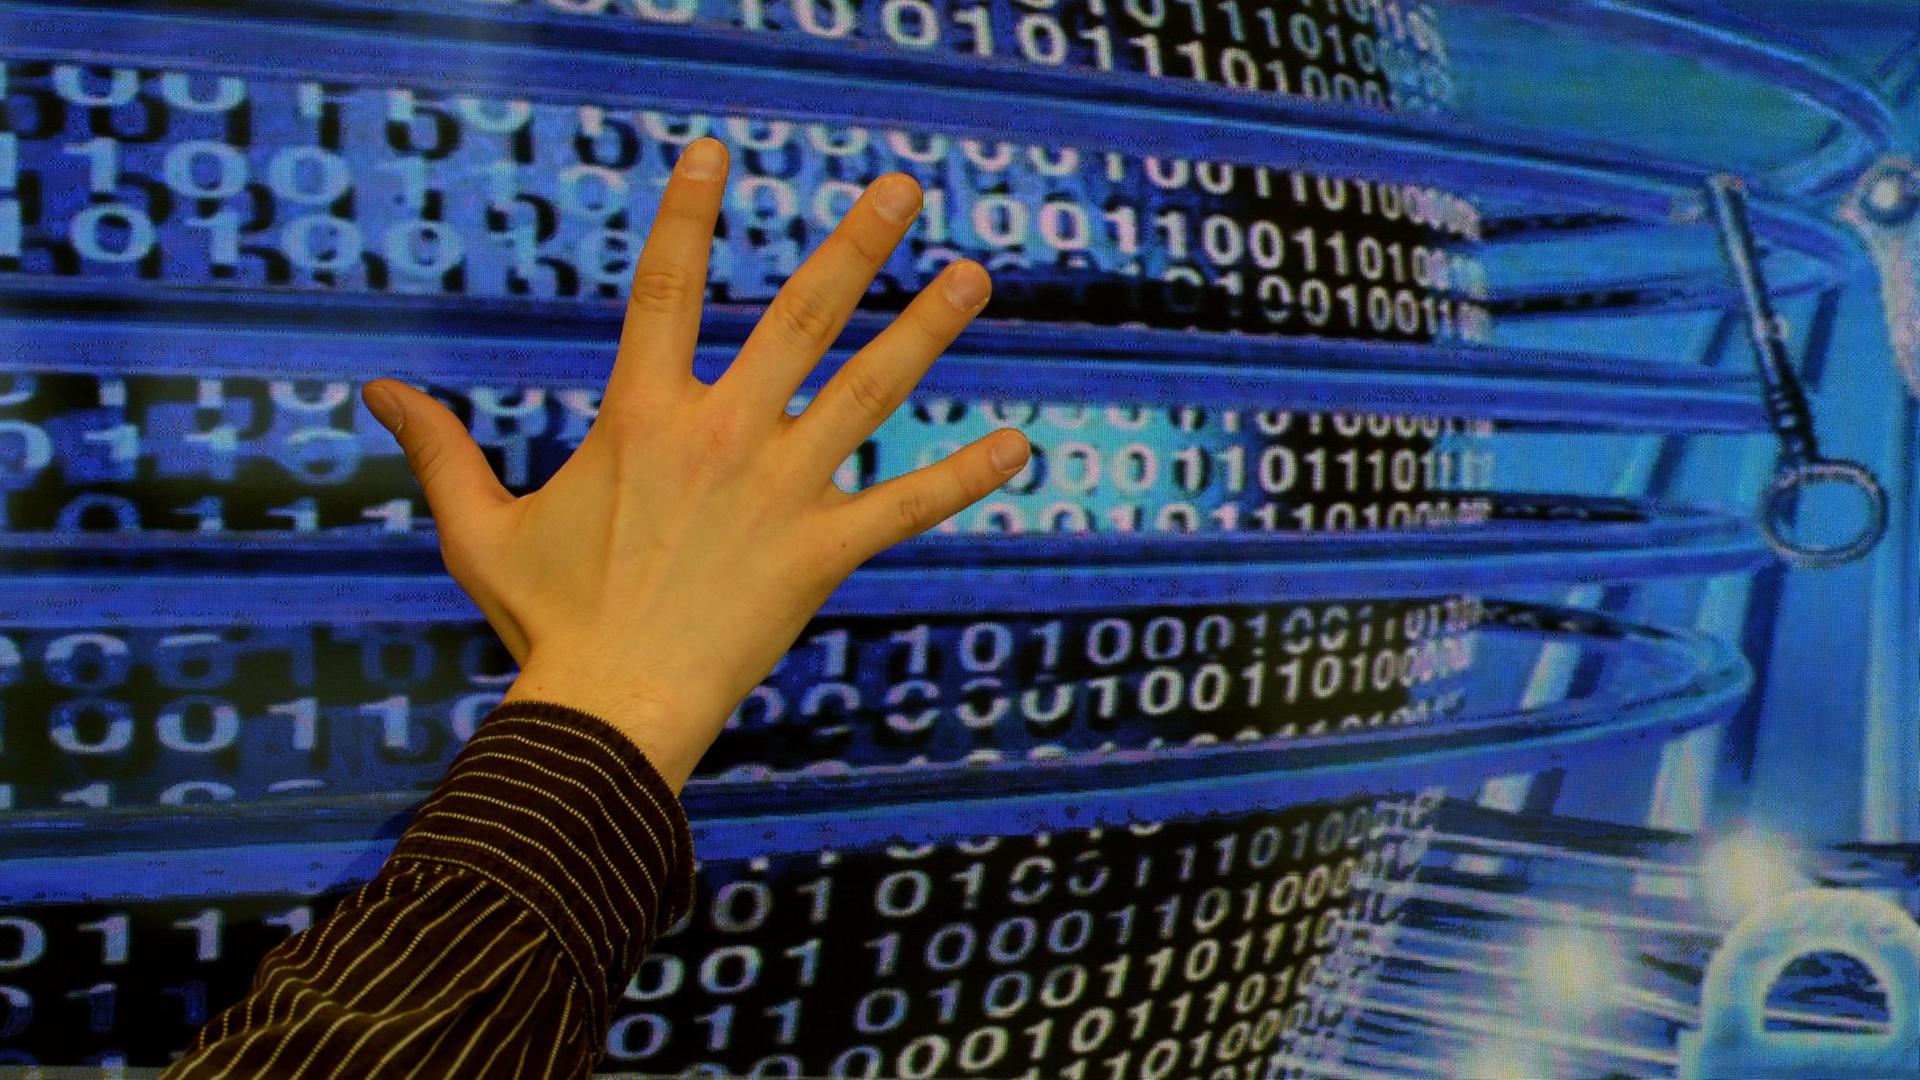 Eine Illustration, bei der ein Mann im Hasso-Plattner-Institut in Potsdam (Brandenburg) eine Hand auf einen Bildschirm mit dem visualisierten, weltumspannenden Internet hält.